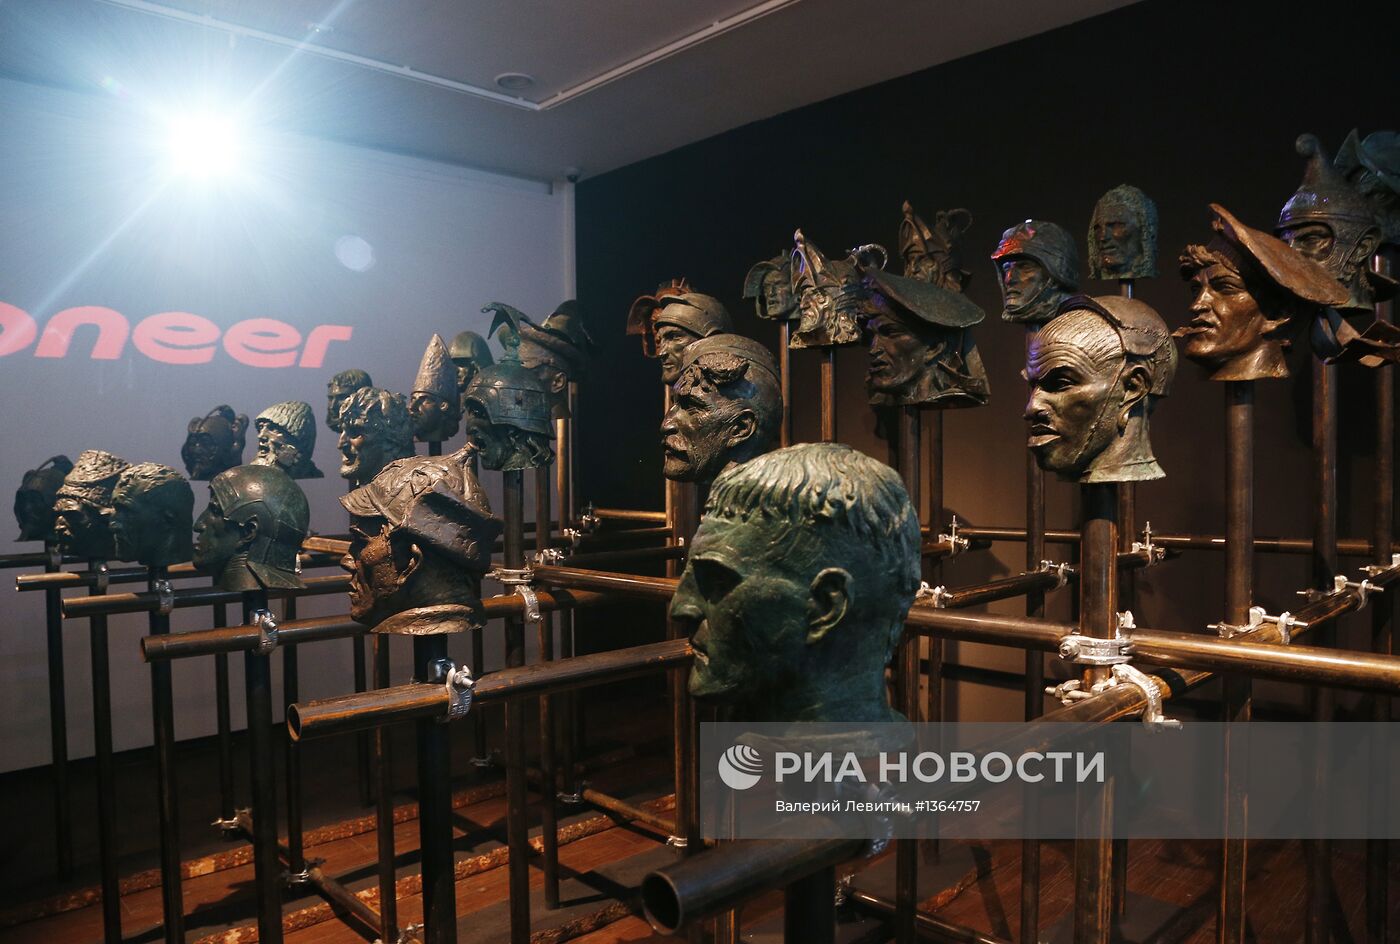 Открытие выставки скульптора Александра Рукавишникова